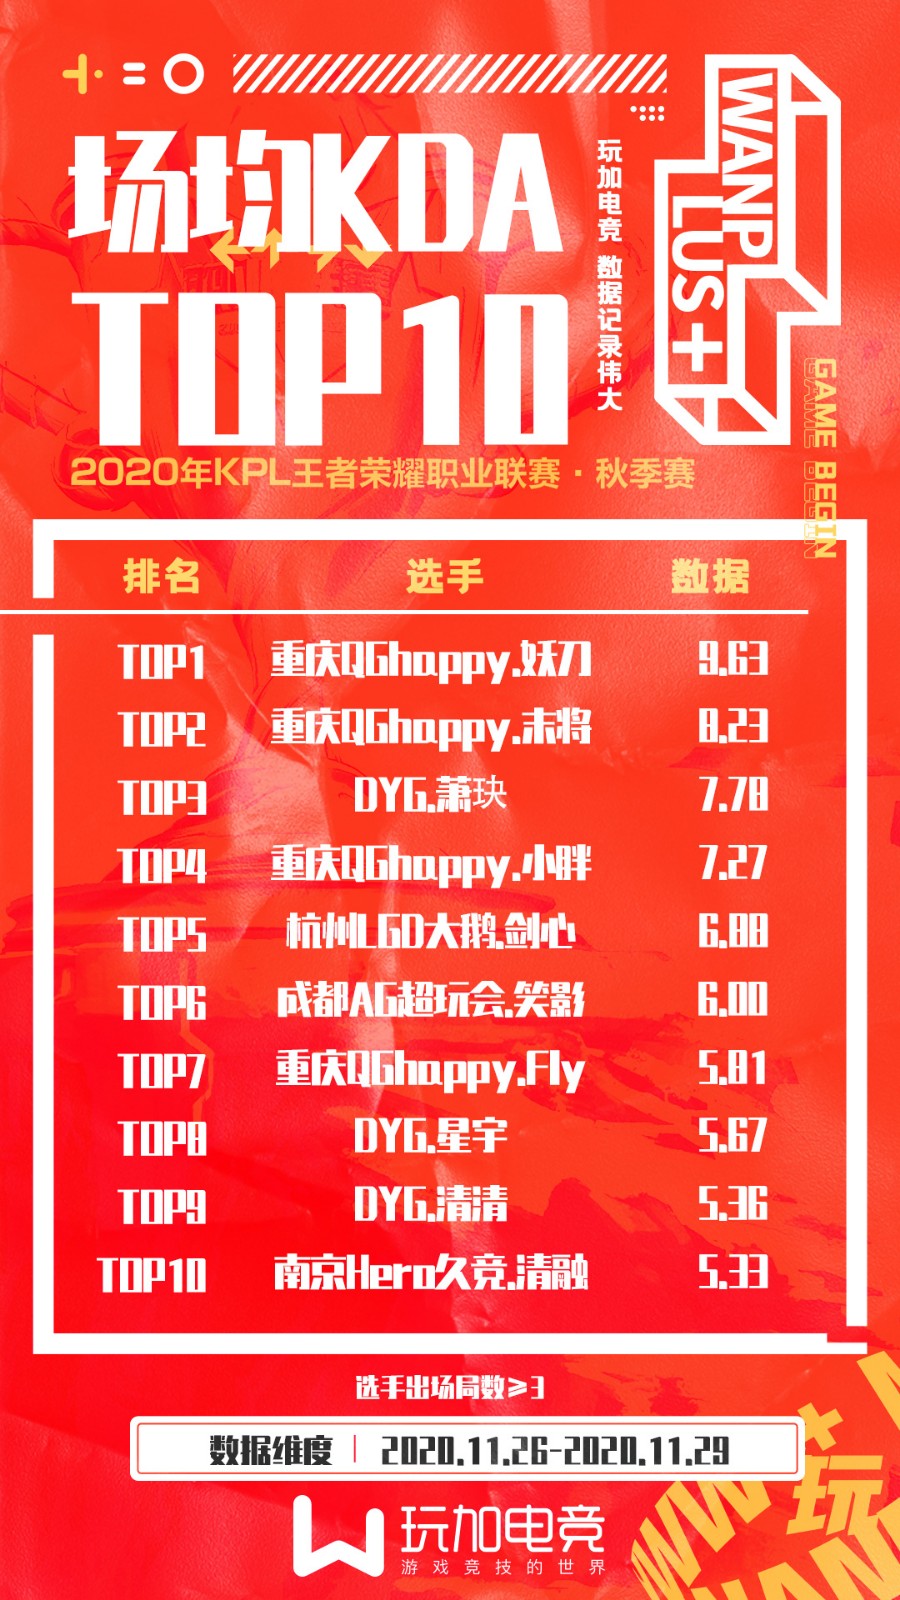 [玩加数据] 季后赛首周选手榜：DYG全员表现出色 登顶4榜